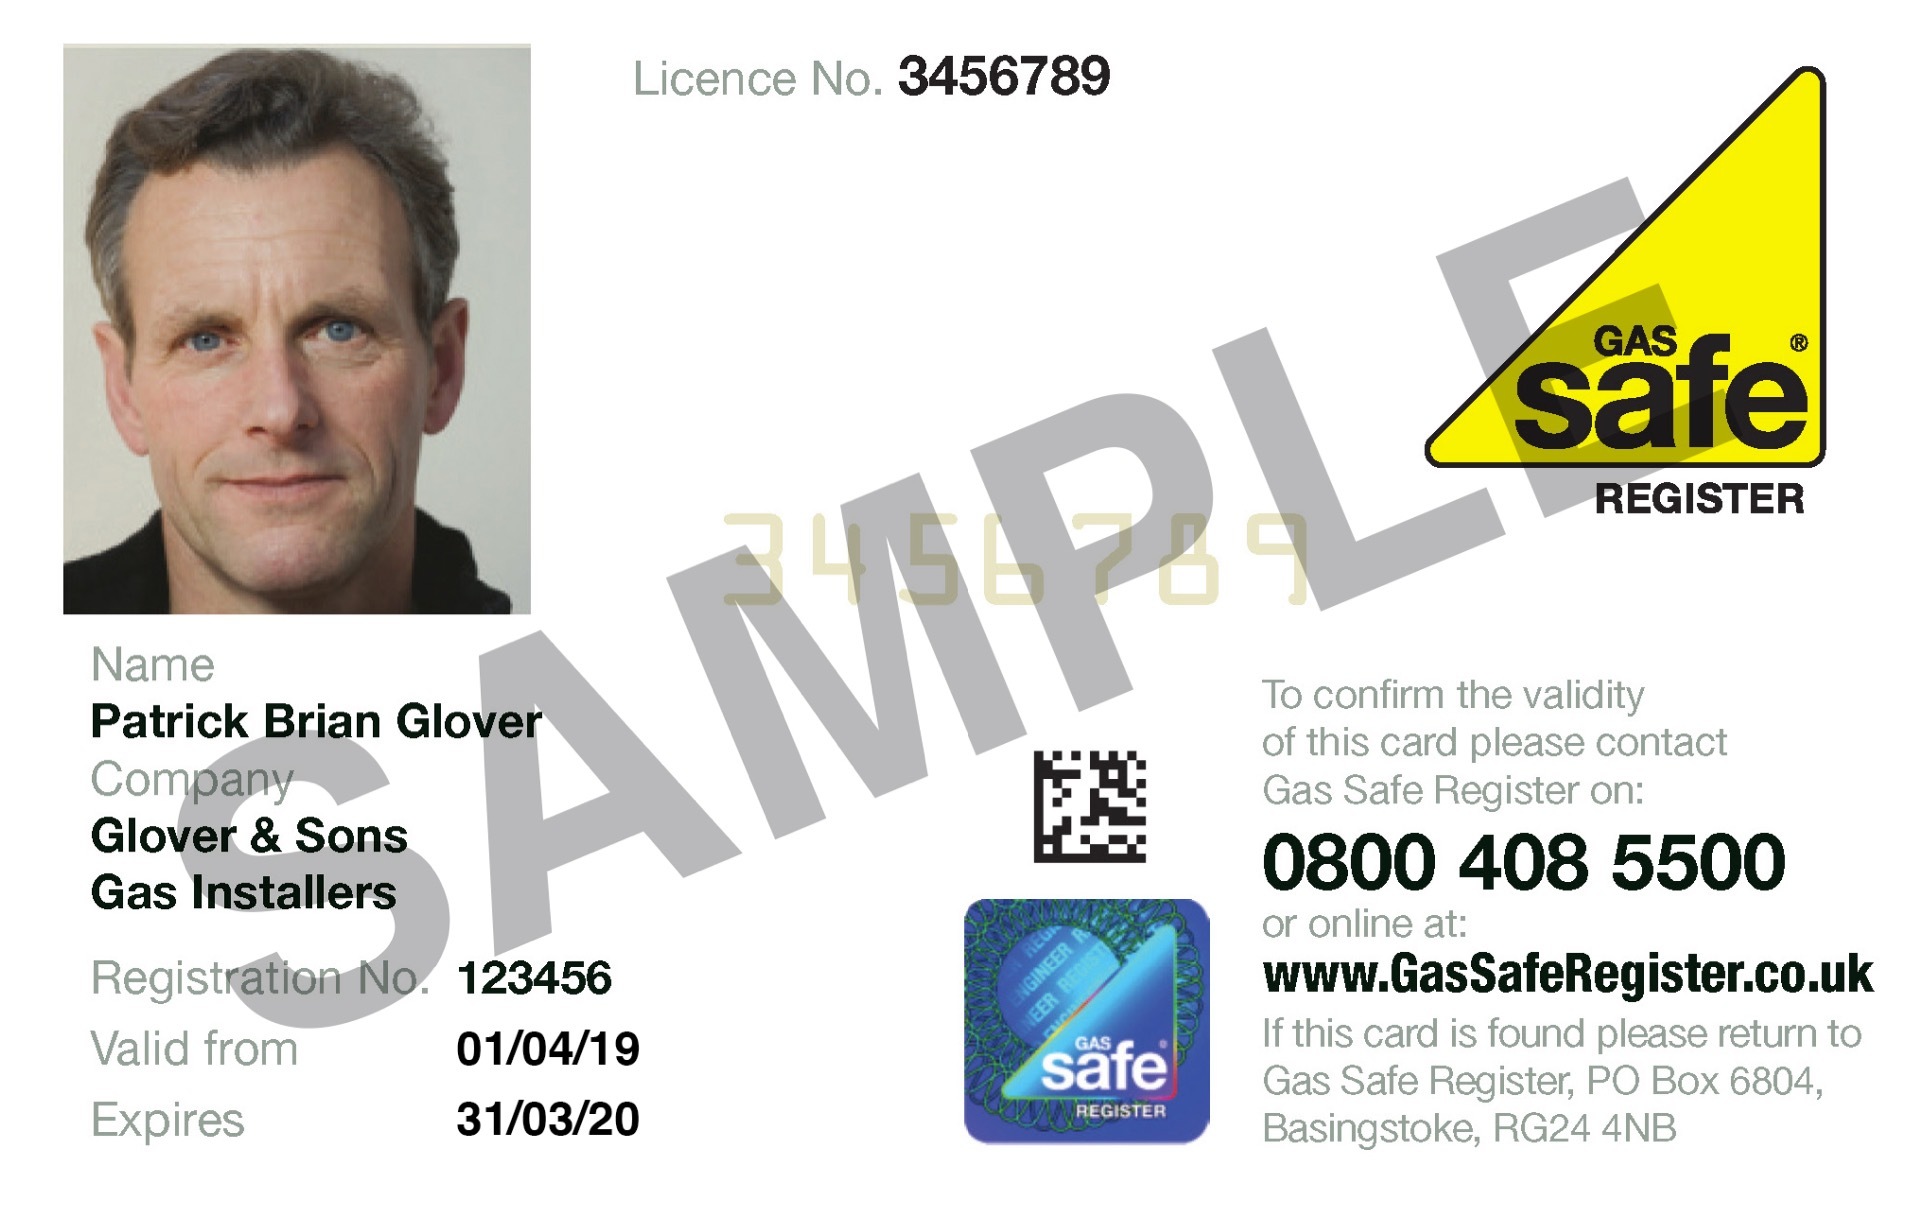 Gas Safe ID card